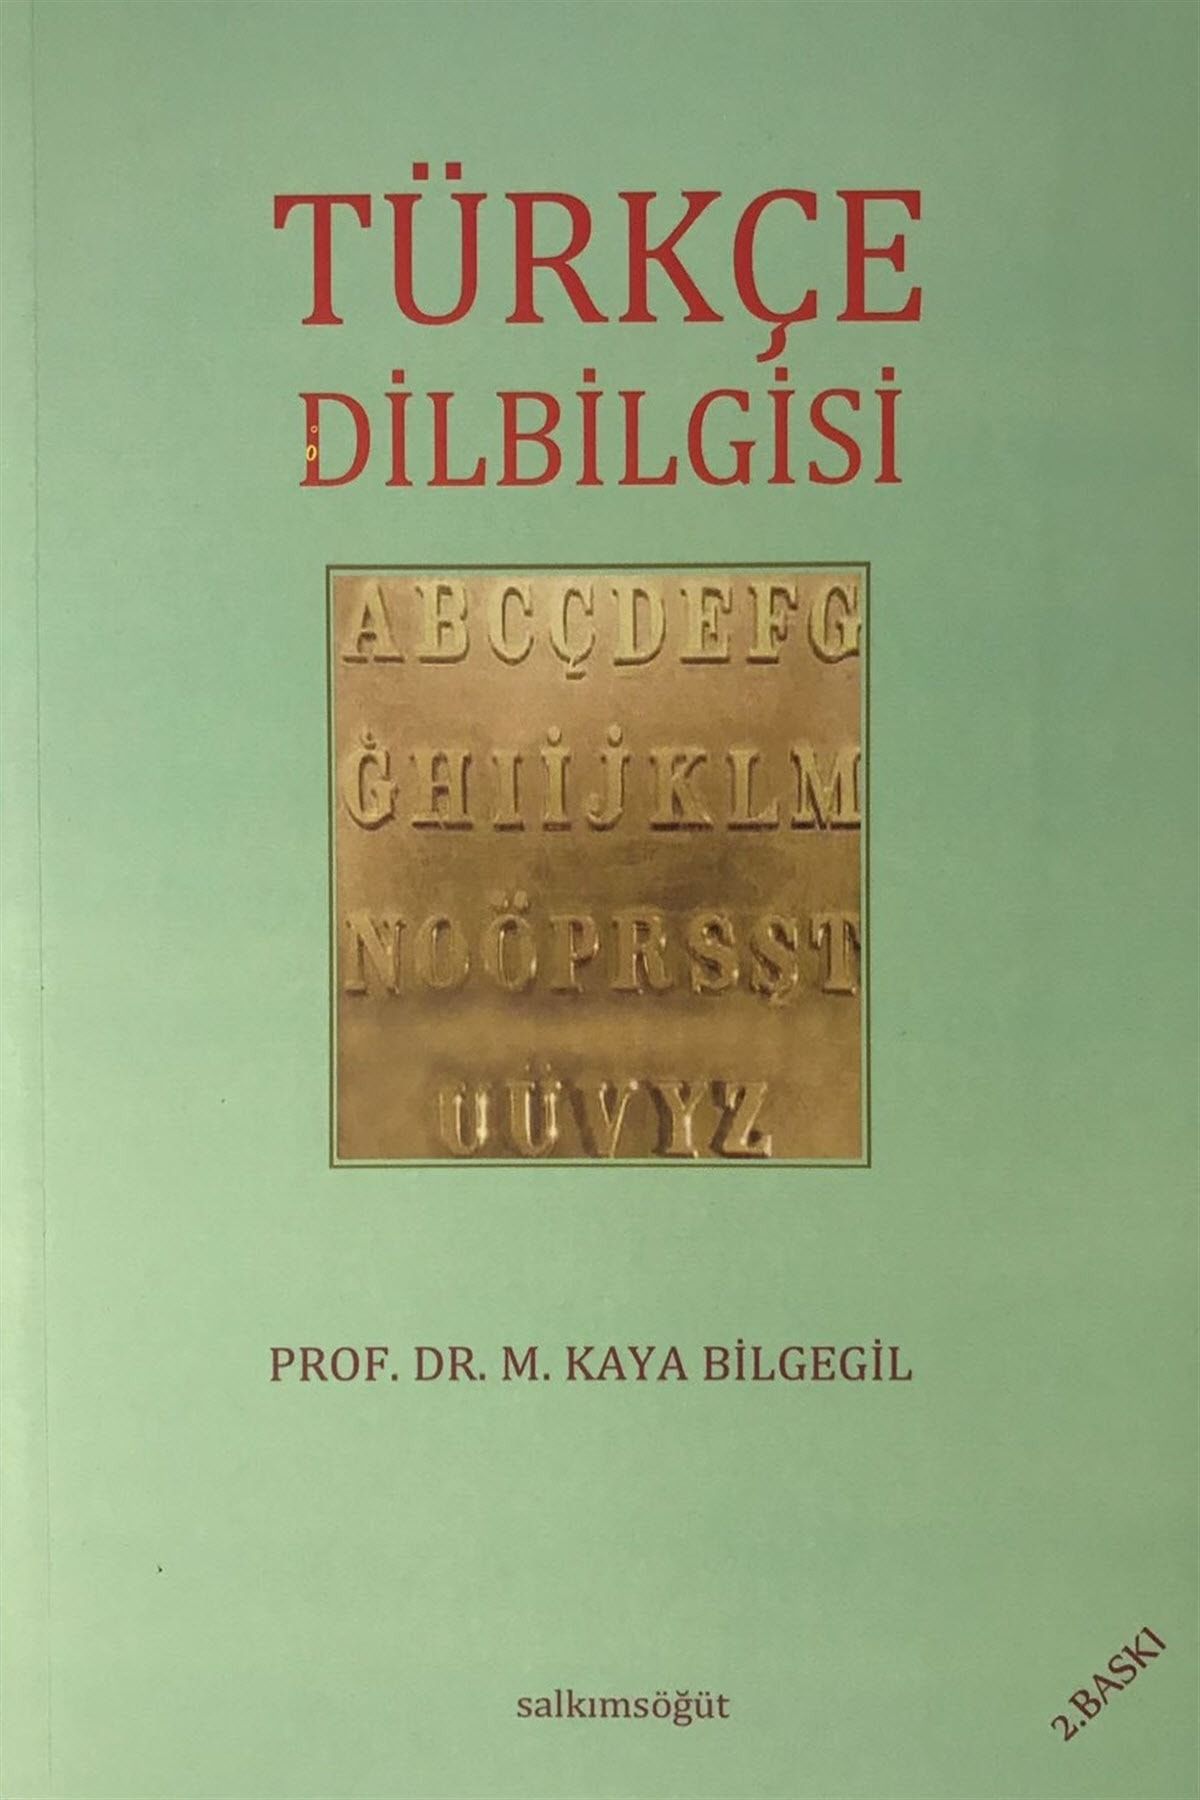 Salkımsöğüt Yayınları Türkçe Dilbilgisi - M. Kaya Bilgegil